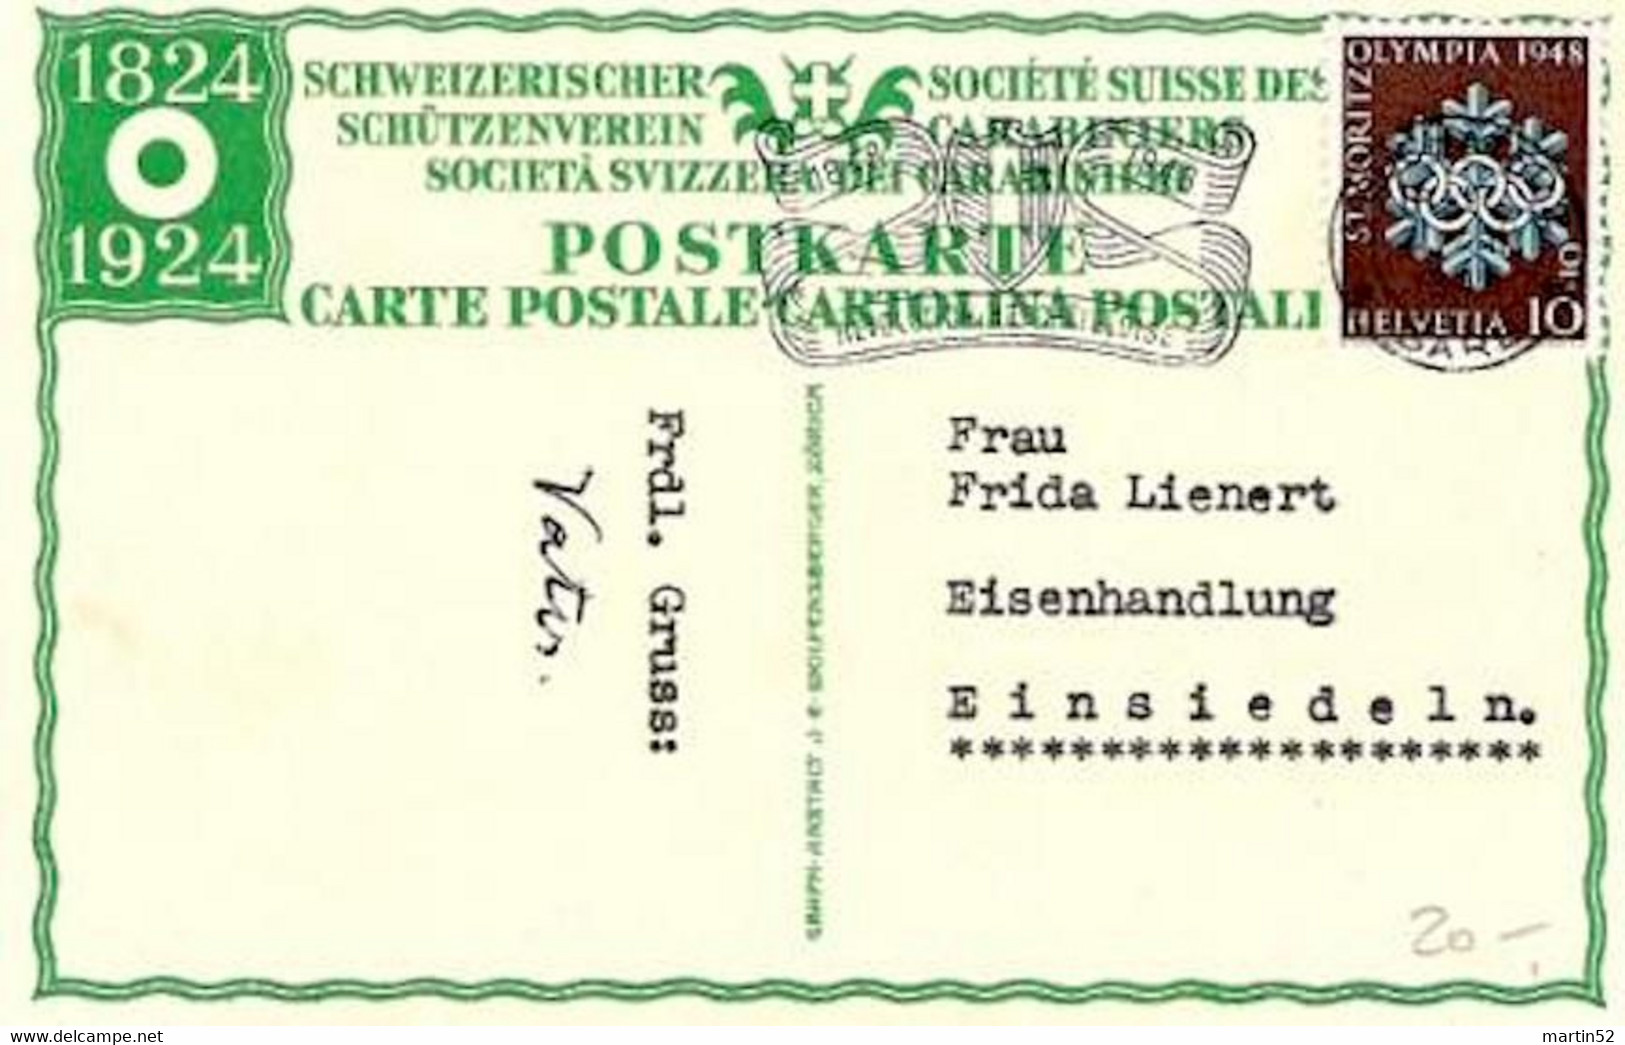 Schweiz Suisse 1924: Bild-PK SCHÜTZENVEREIN 1824-1924 CPI Société Suisse Des Carabiniers WIII 26 O NEUCHÂTEL 1.III.1948 - Waffenschiessen